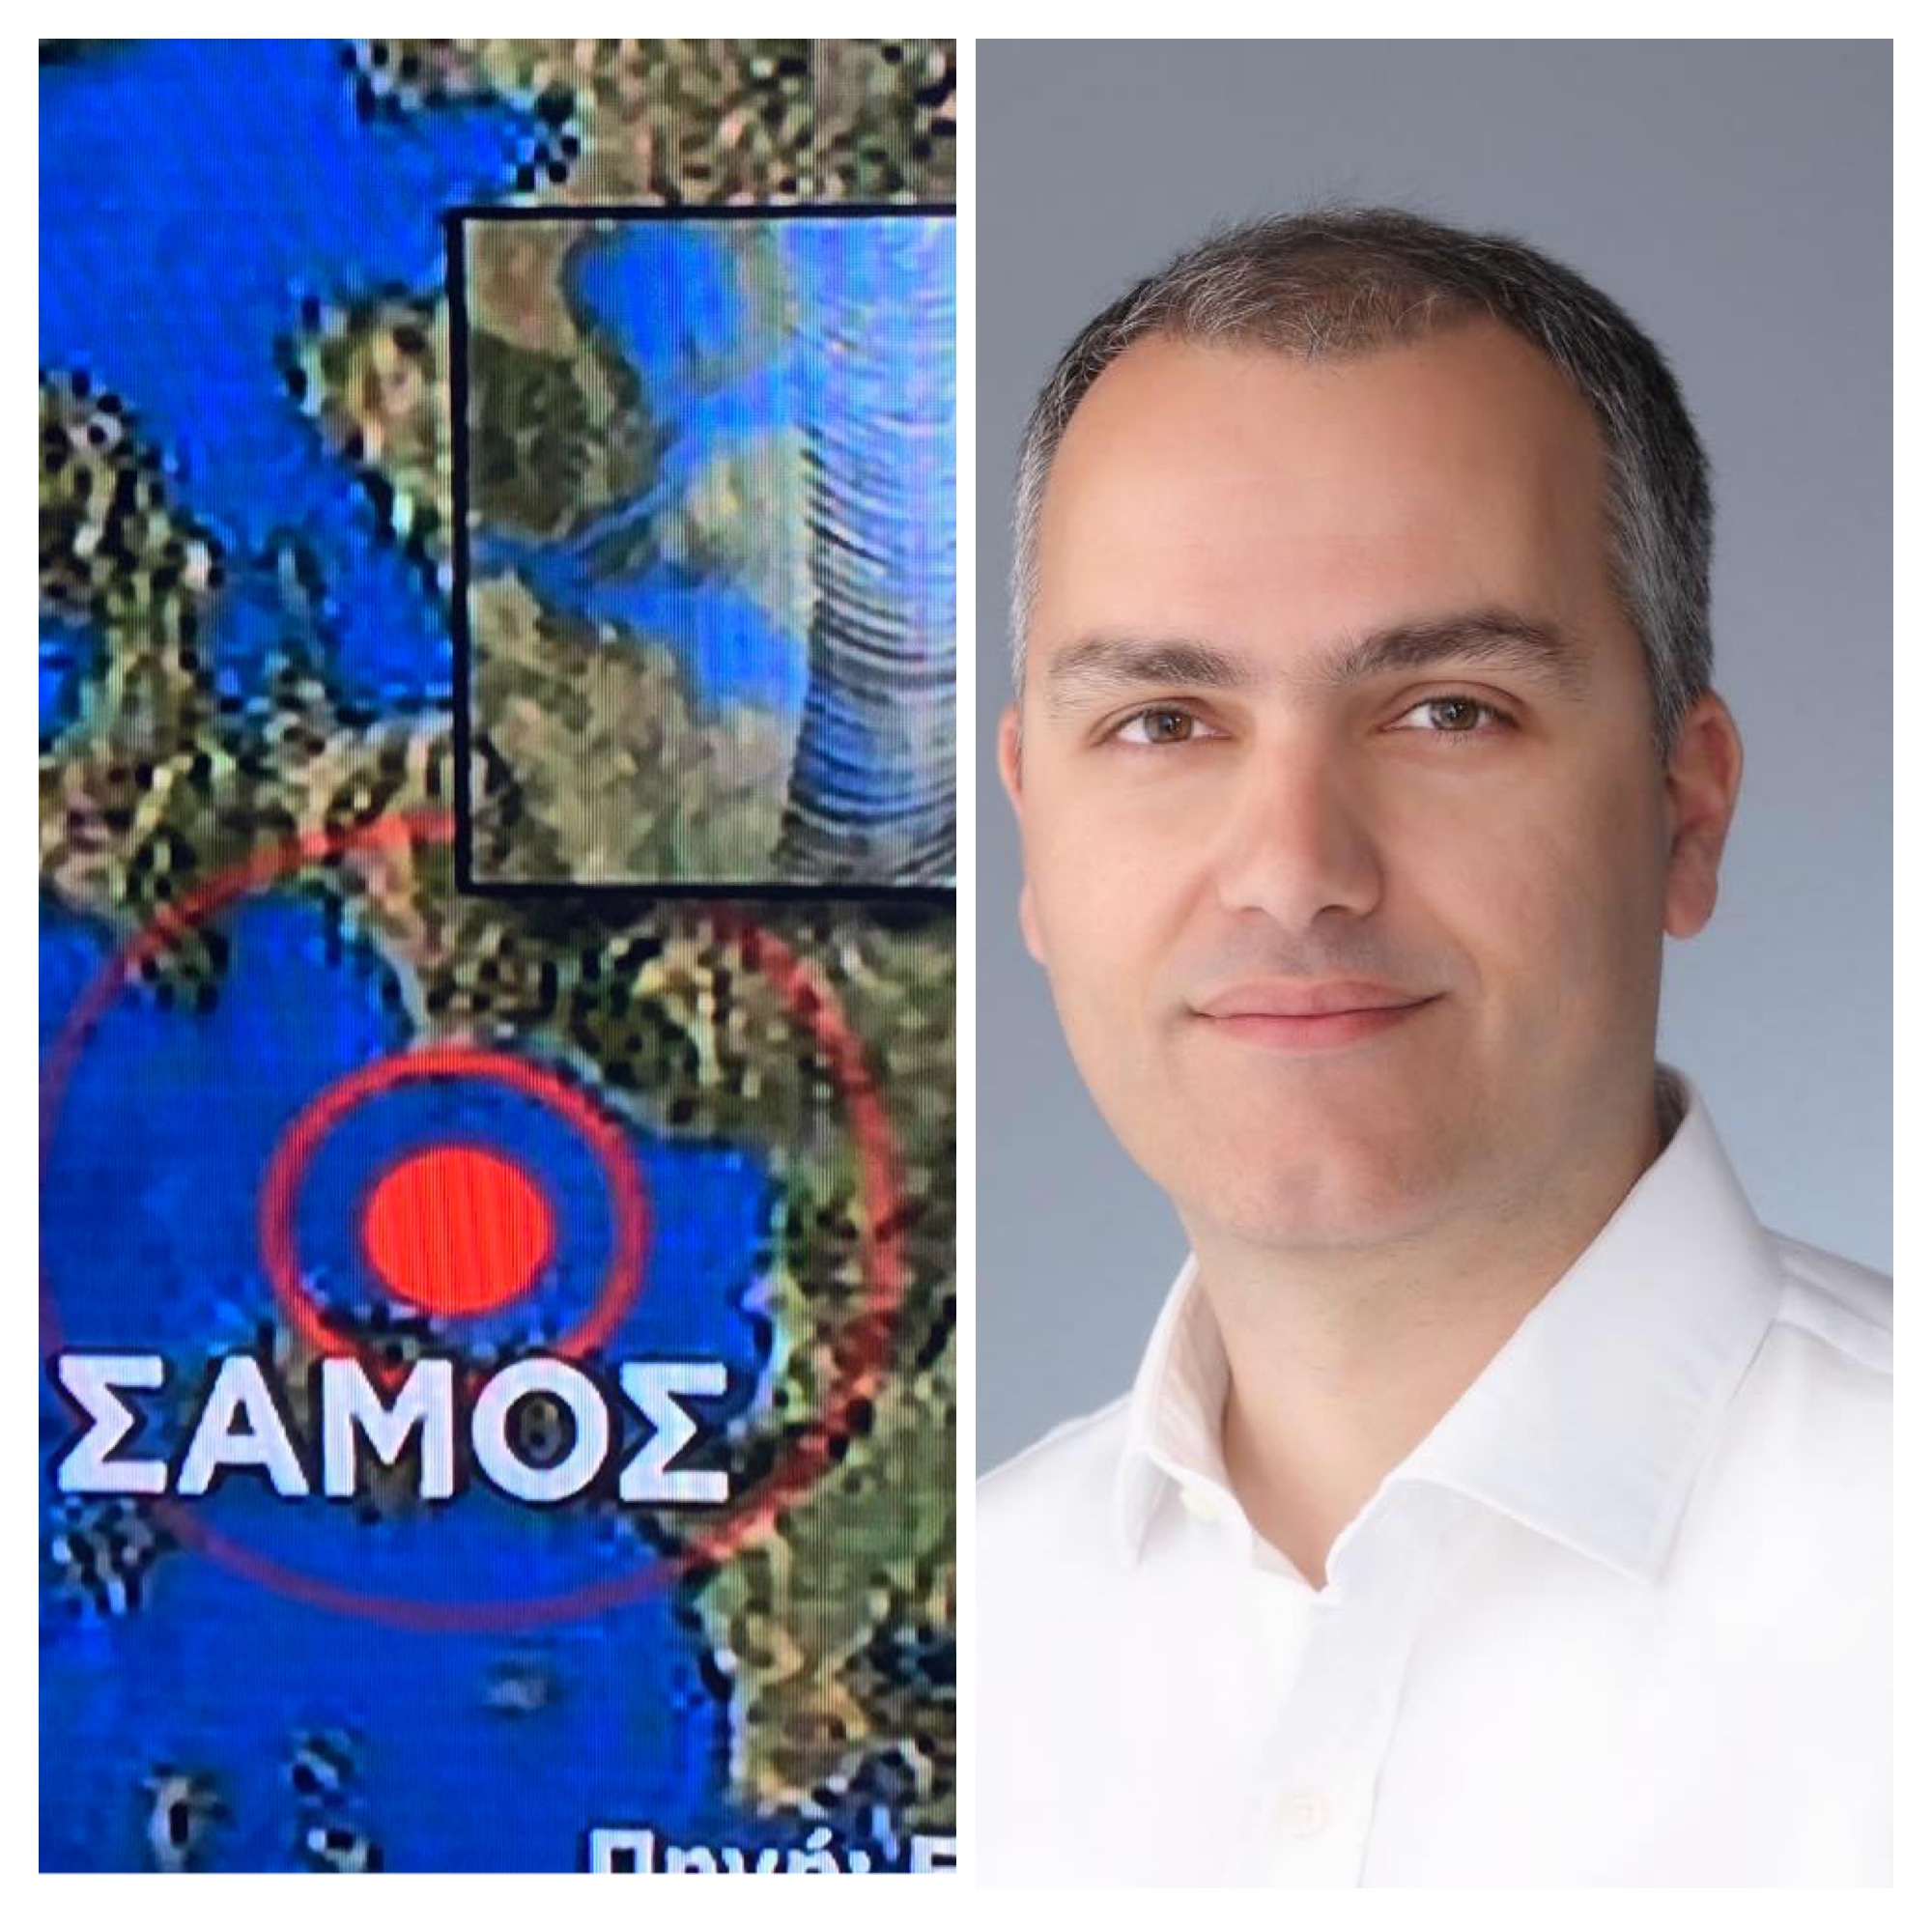 Έκτακτη ενημέρωση της Π.Ε. Εύβοιας: Λόγω του σεισμού της Σάμου μείνετε μακριά από παραλίες